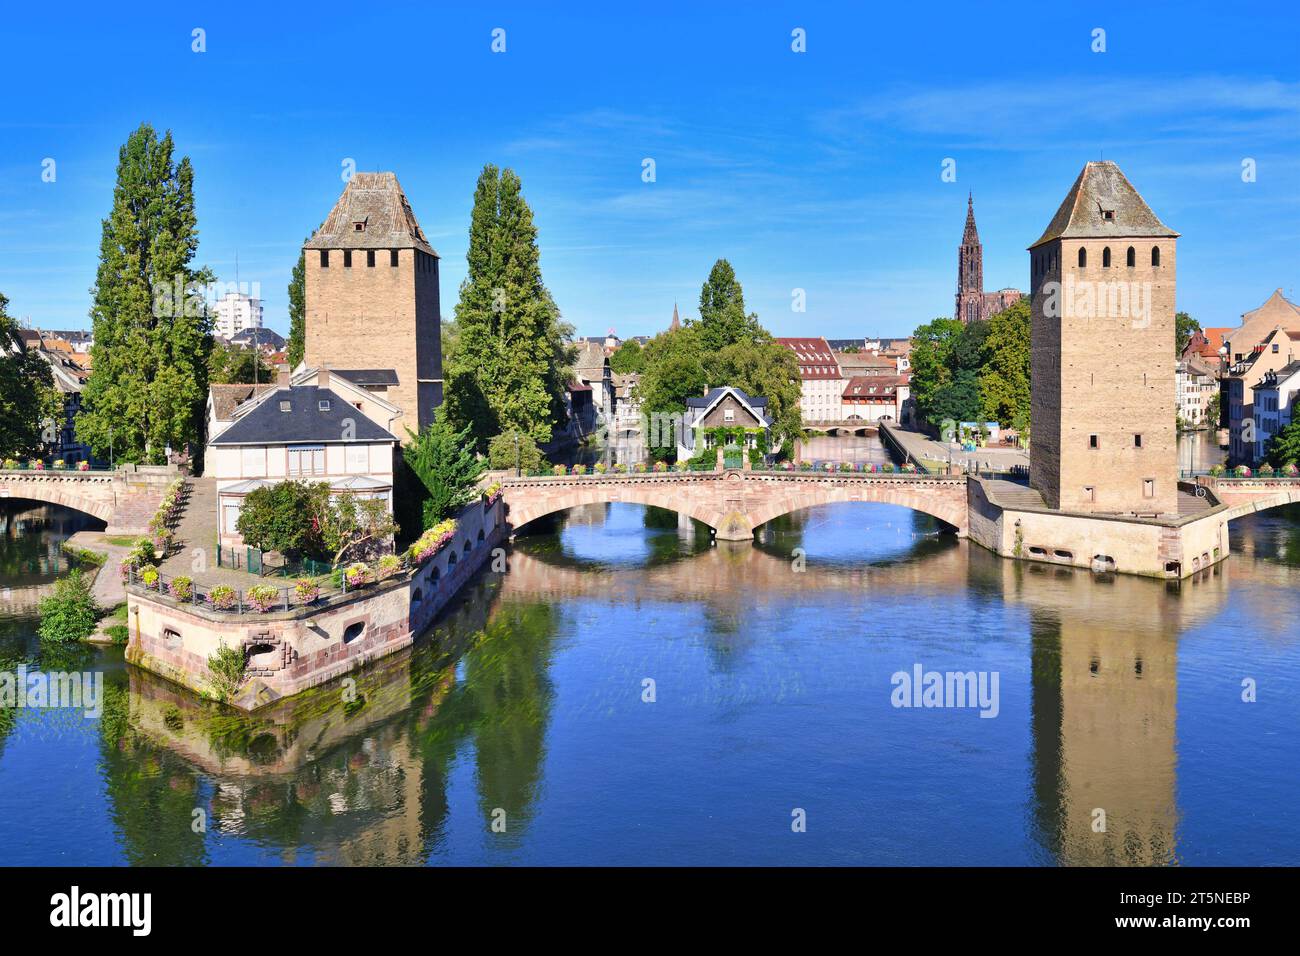 Straßburg, Frankreich: Historischer Turm der Brücke Ponts Couvert als Teil der Verteidigungsanlage, die im 13. Jahrhundert auf der Ill in Petite Franc errichtet wurde Stockfoto